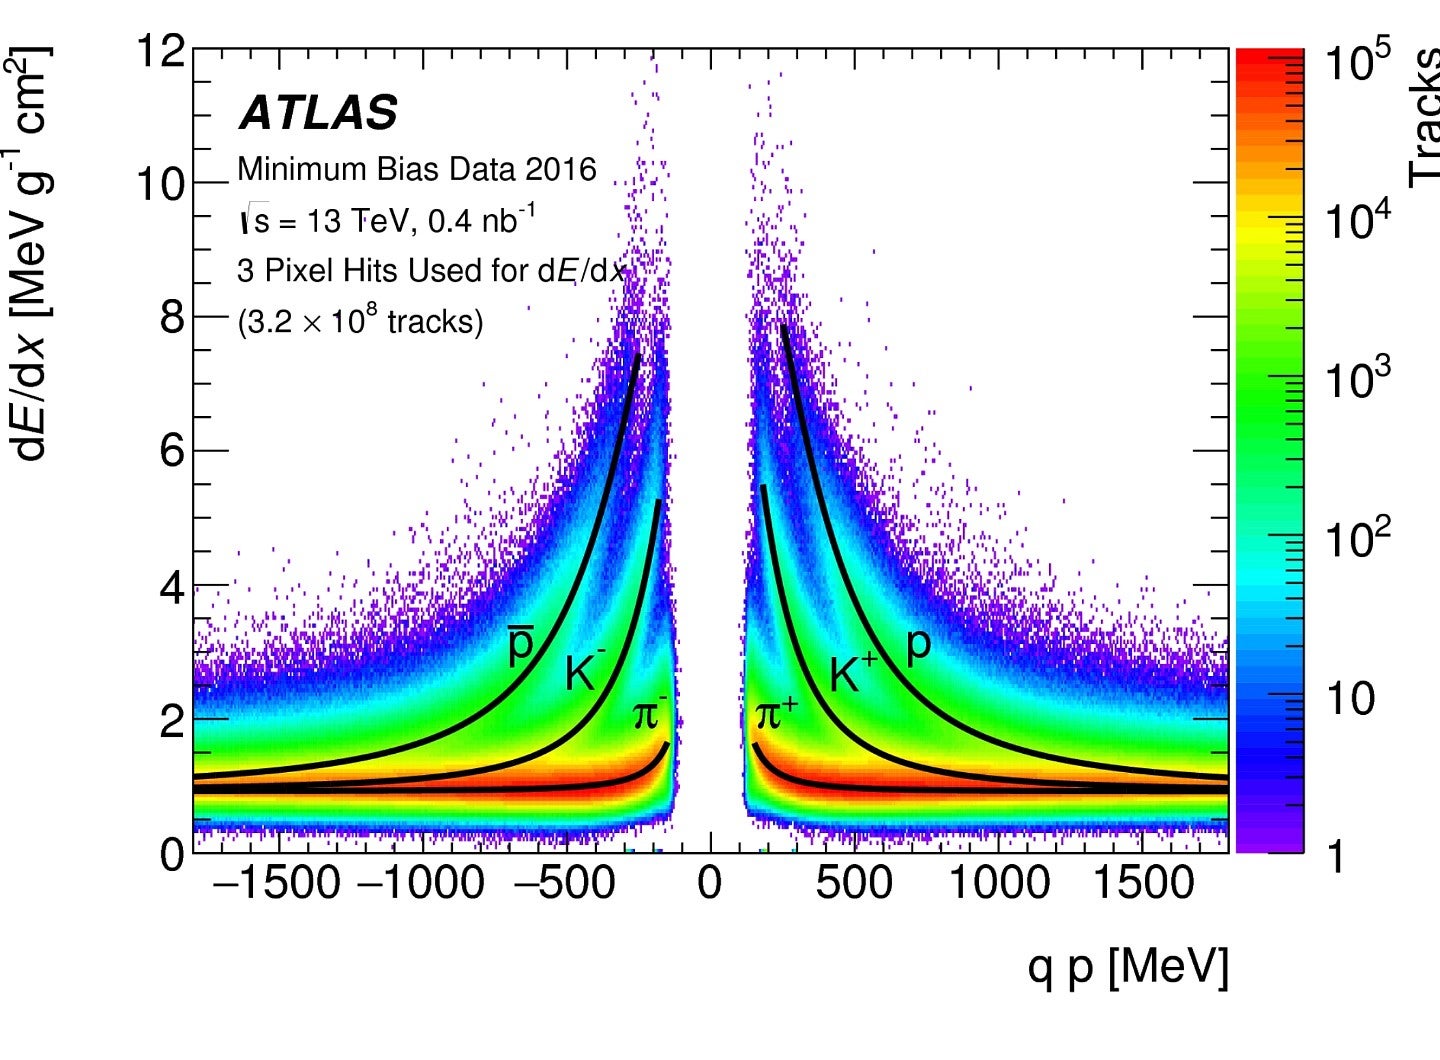 graph of Atlas detector data